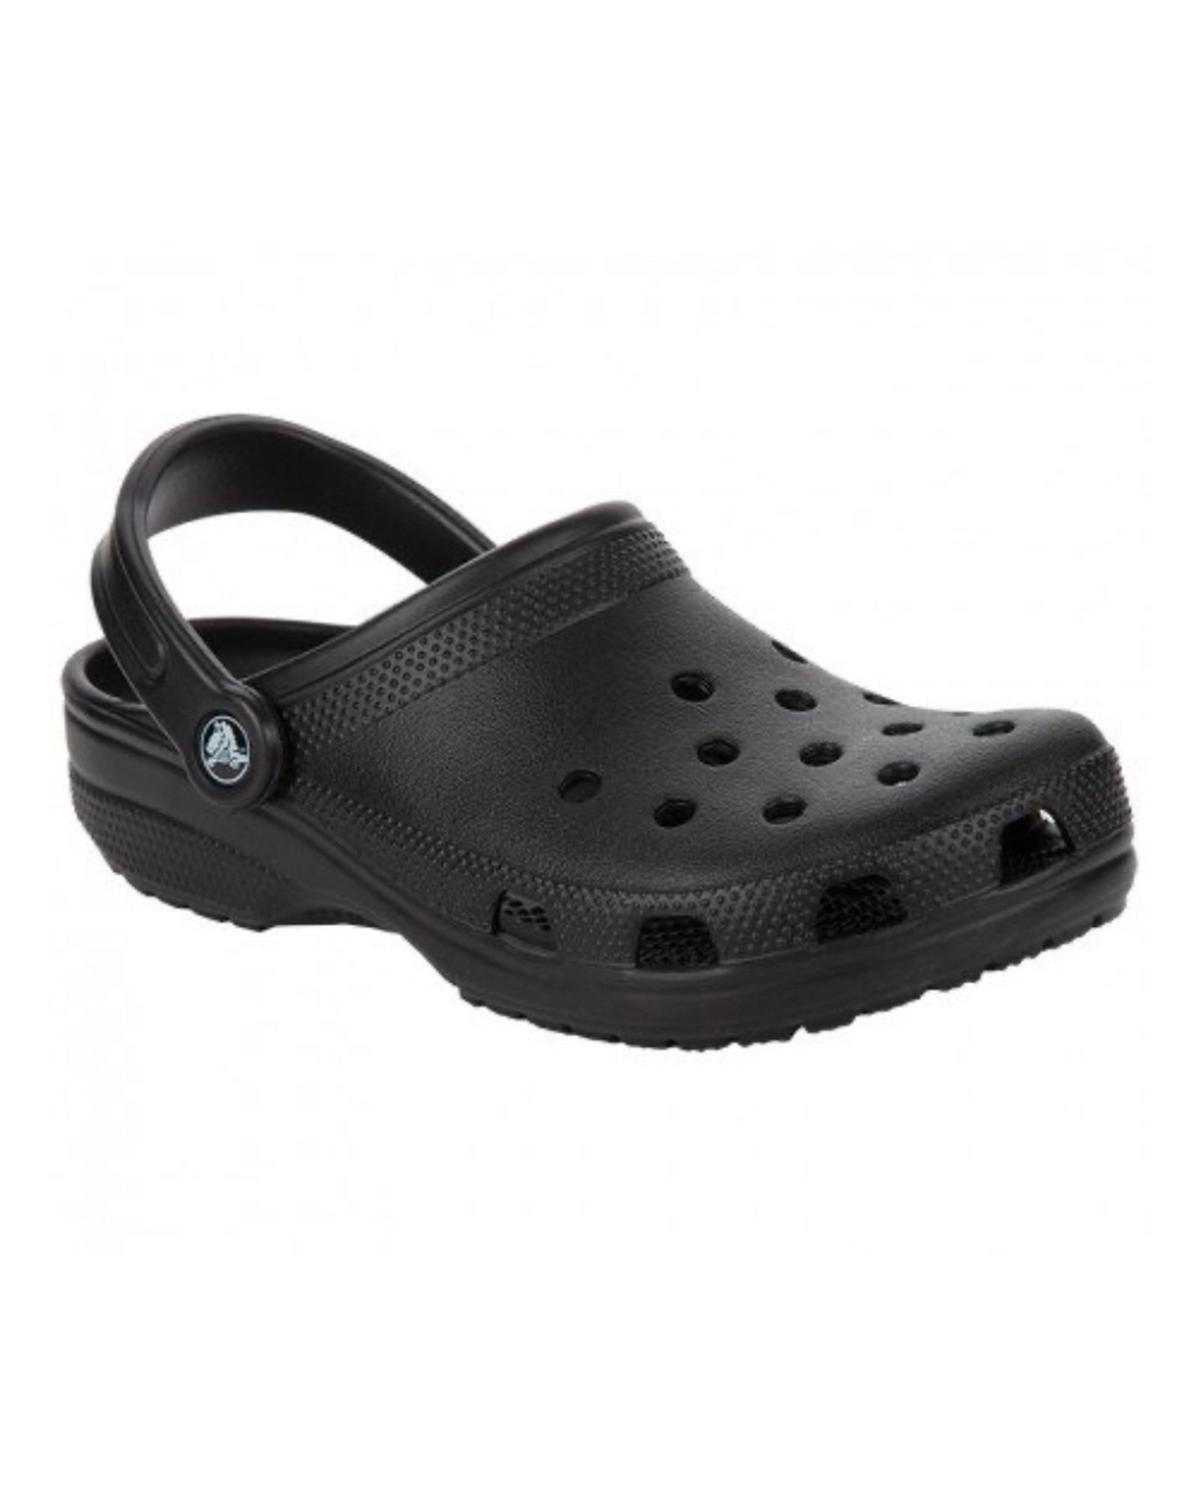 Crocs Classic Sandals -  Black